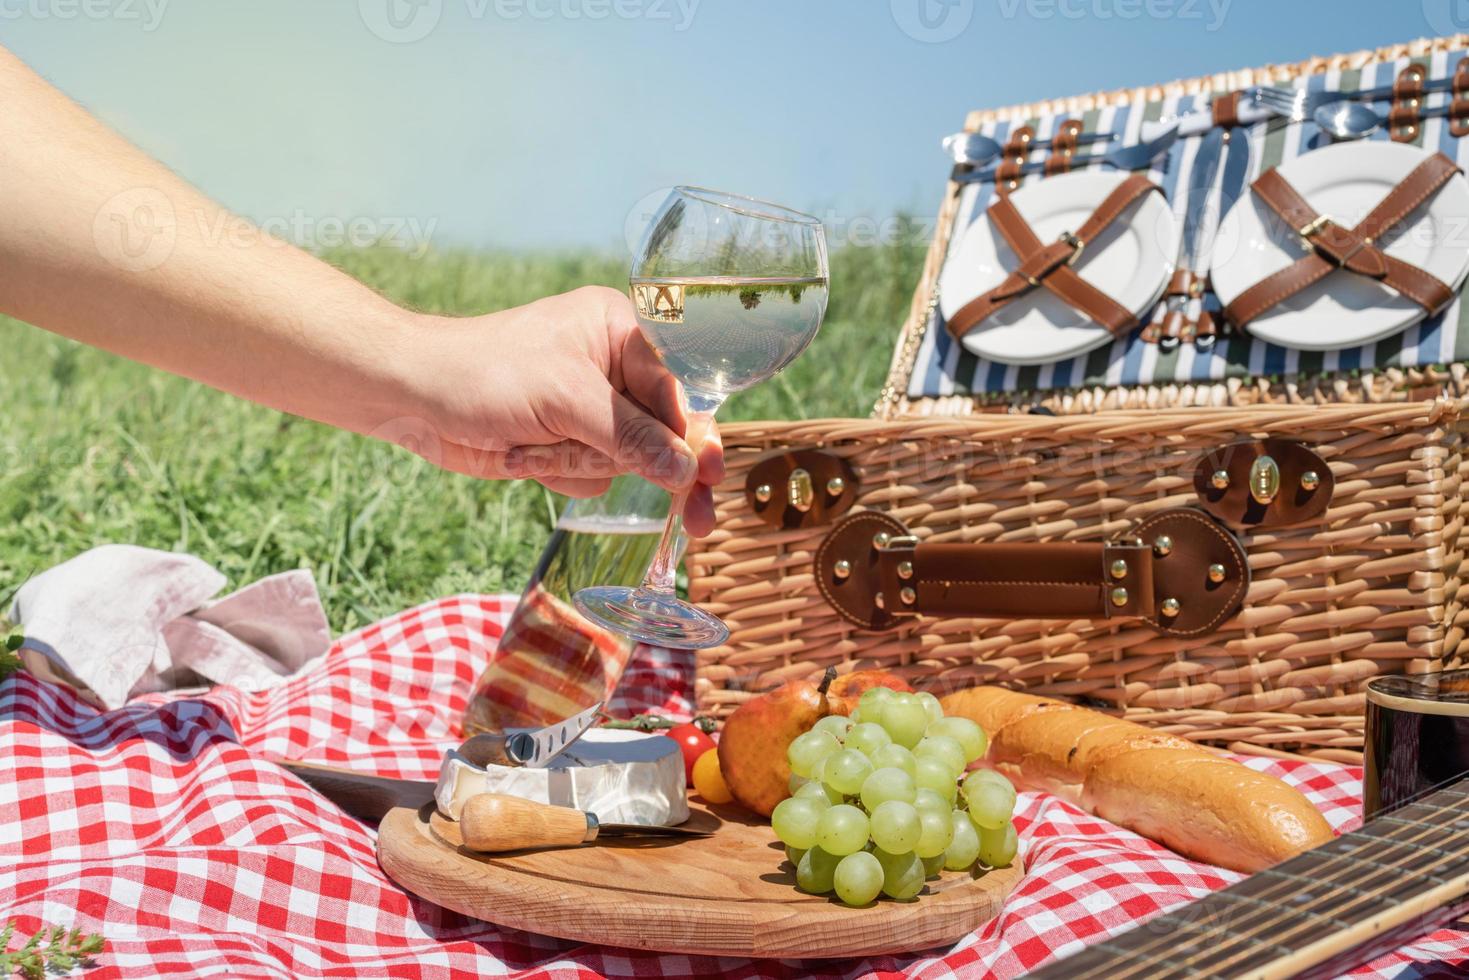 primo piano del cestino da picnic con bevande e cibo sull'erba. bicchiere di vino della holding della mano maschio foto